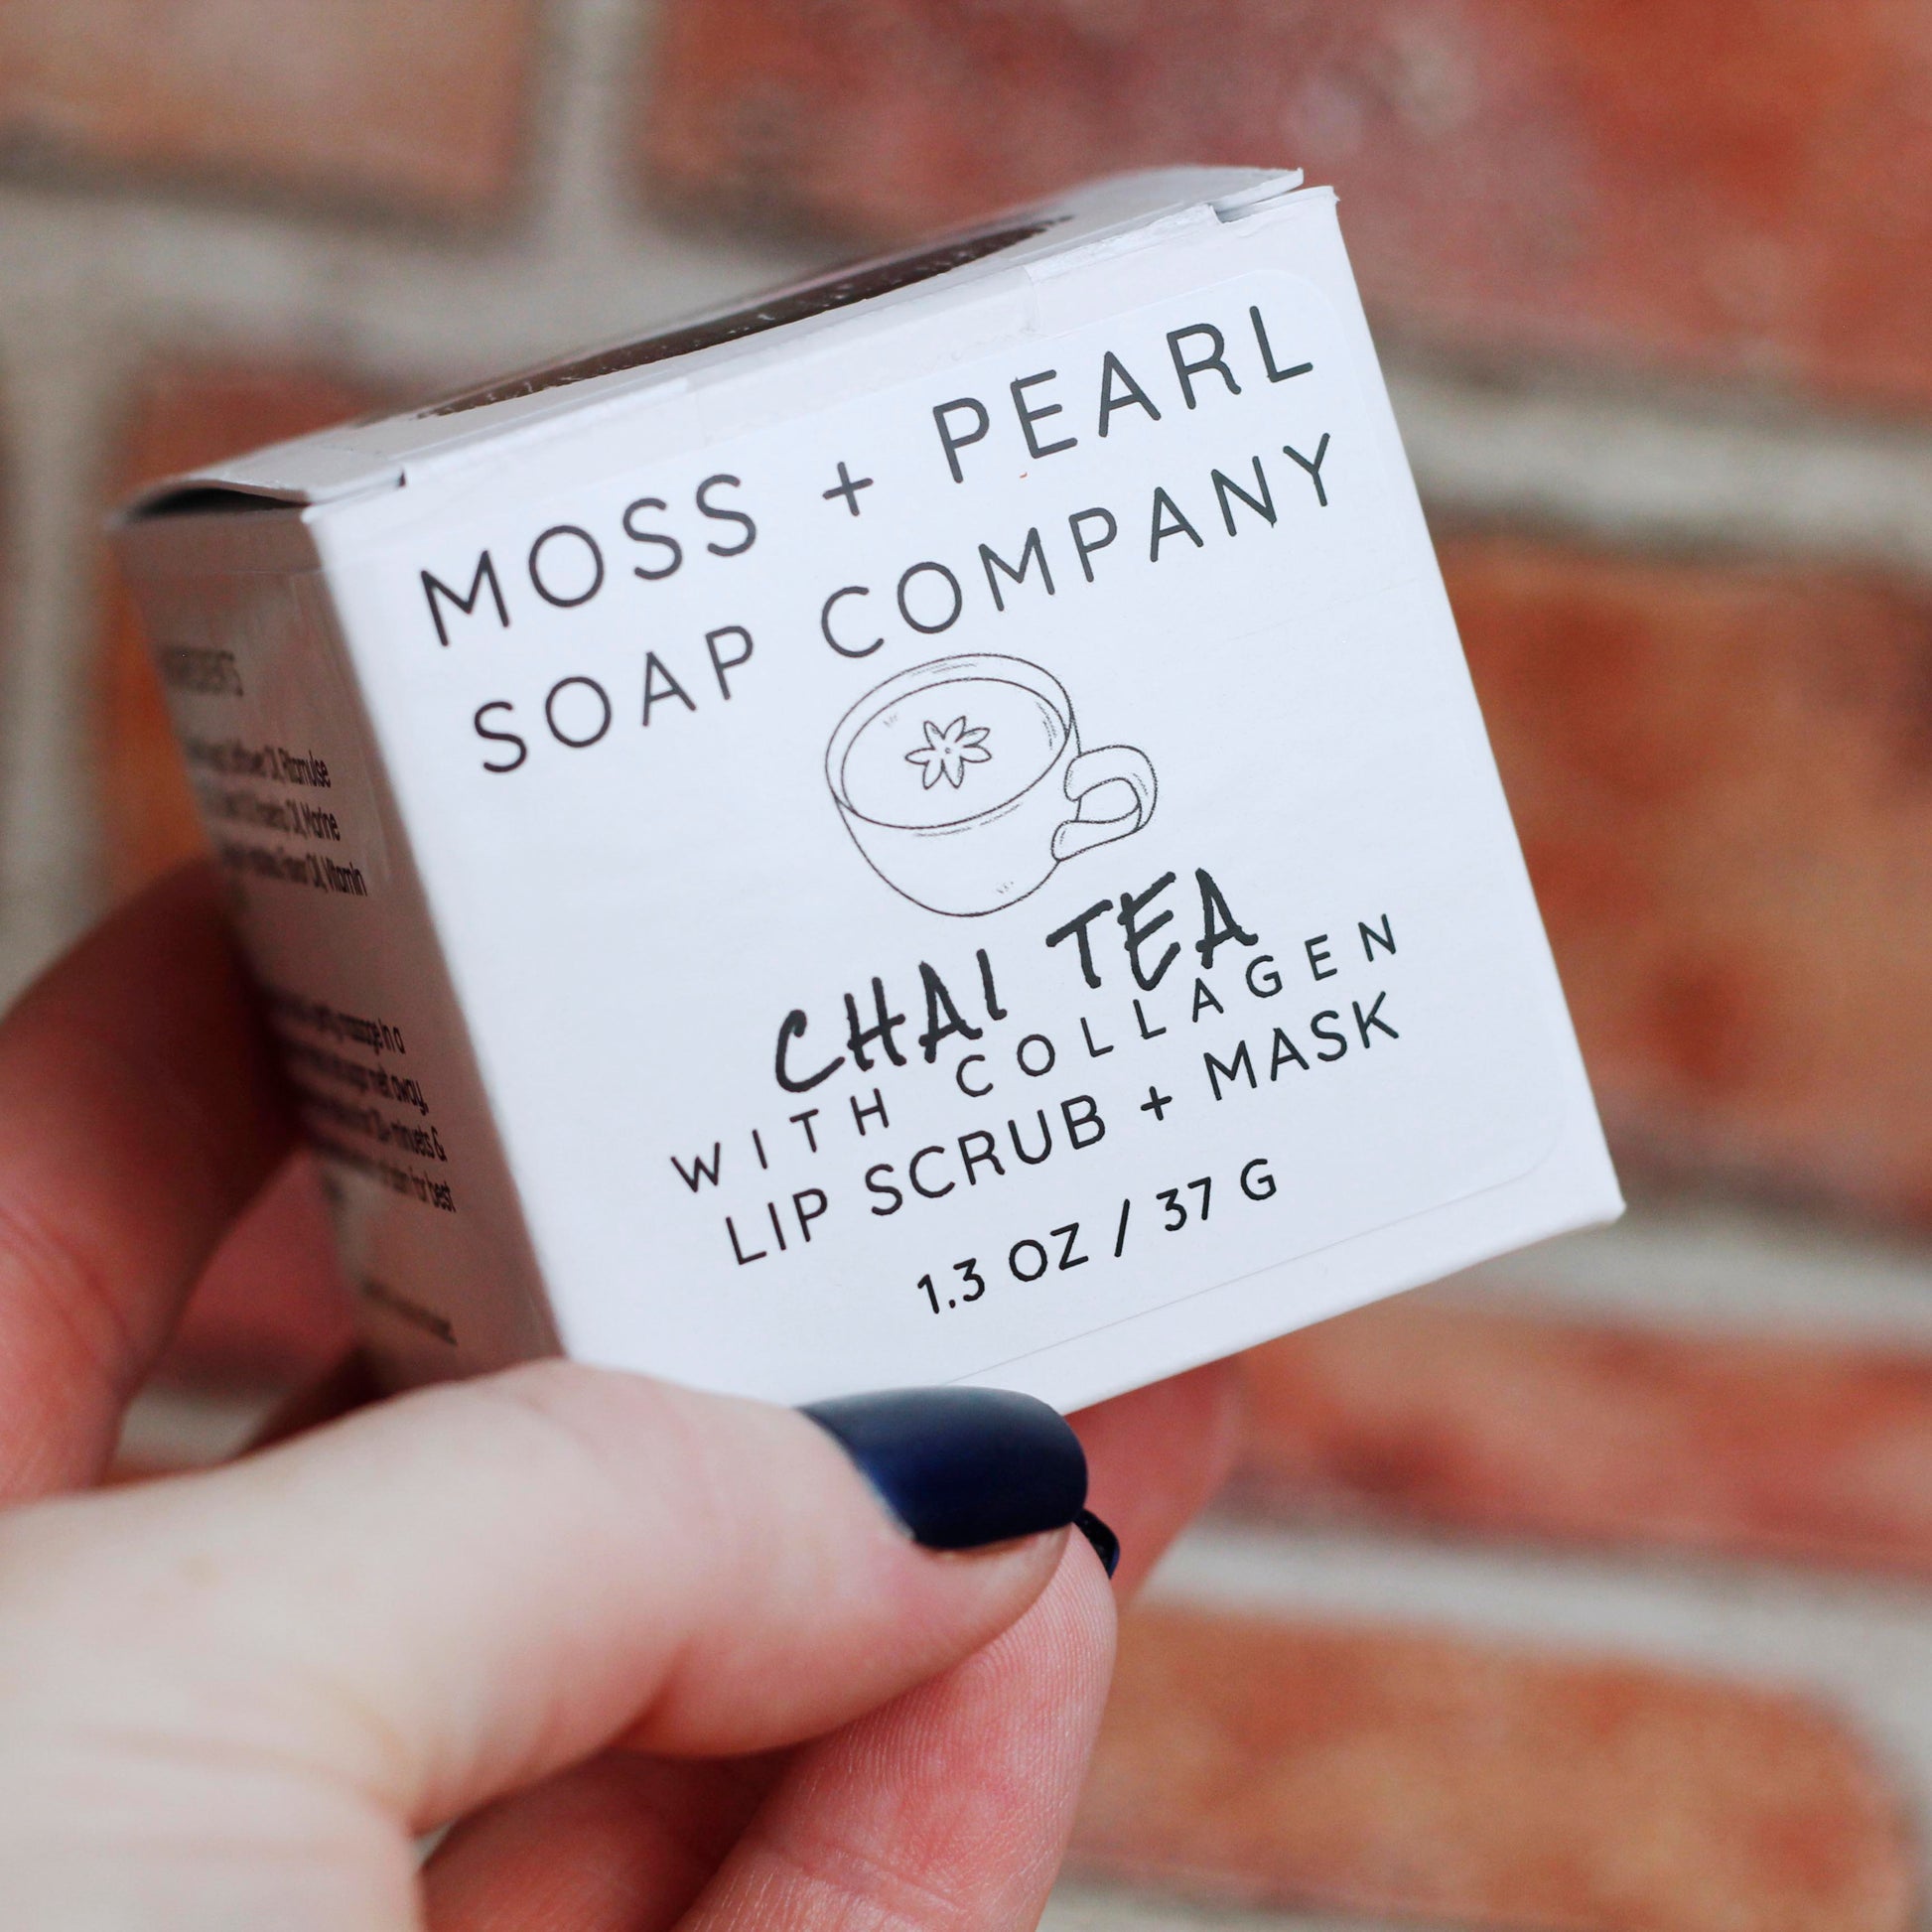 LIP SCRUB + MASK Moss + Pearl Soap Company